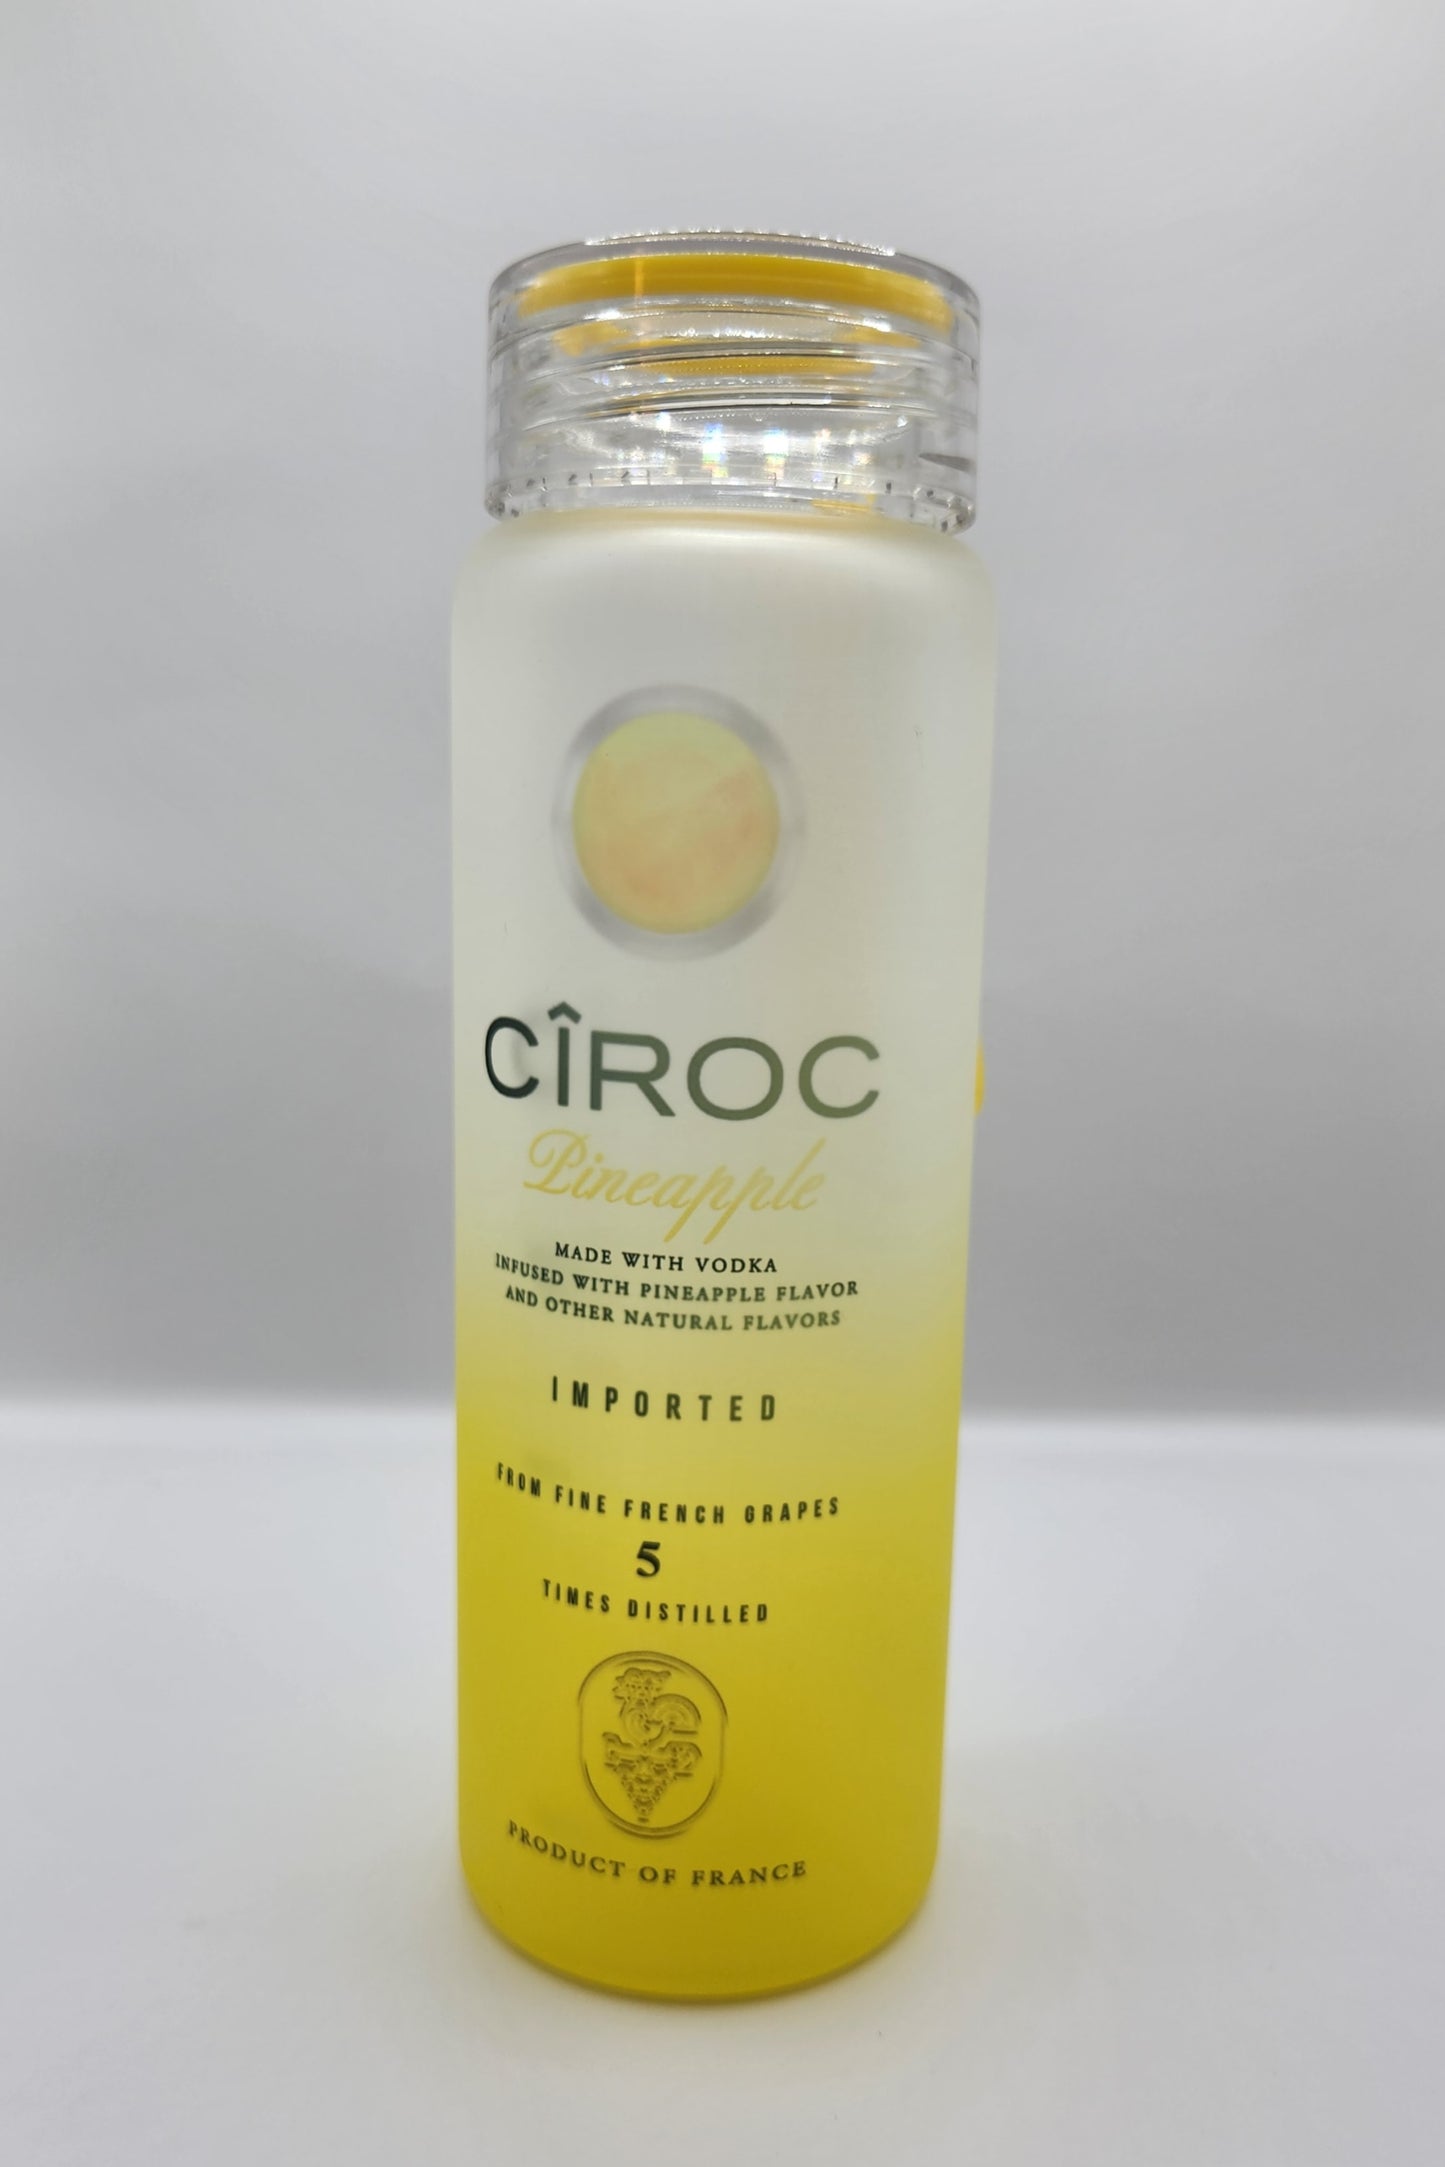 Ciroc glass bottles